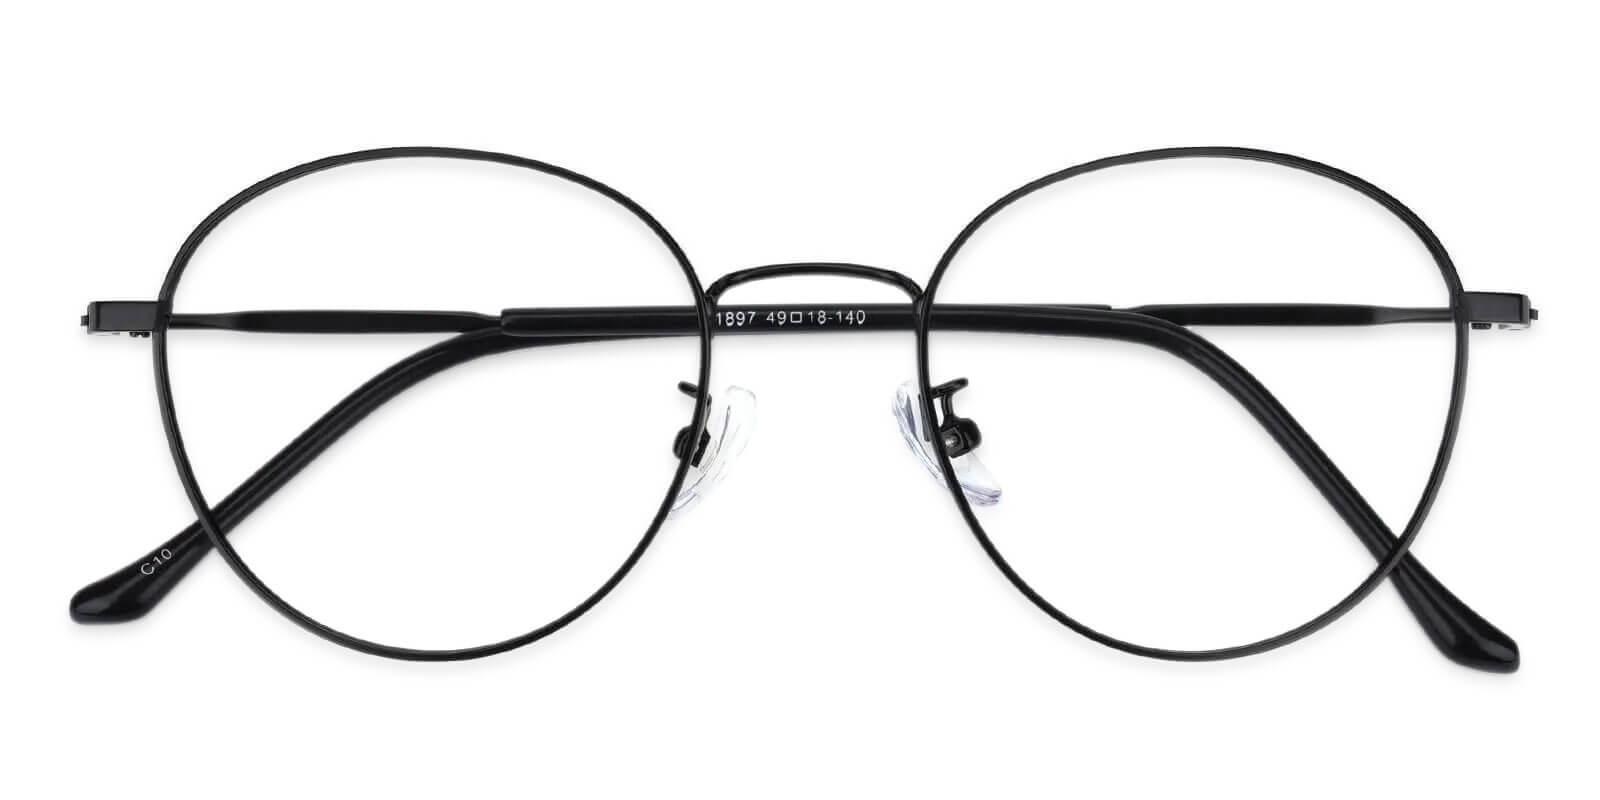 Joe Black Metal Eyeglasses , NosePads Frames from ABBE Glasses